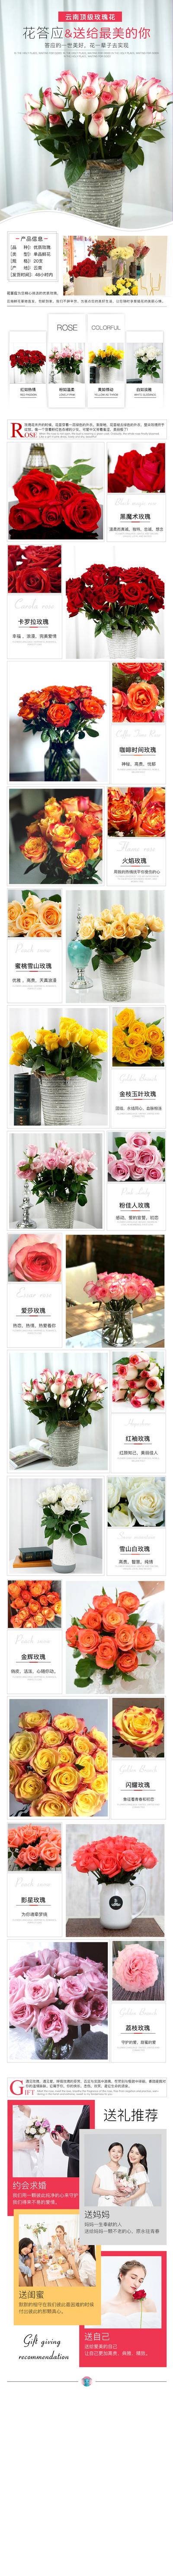 南门网 广告 电商 长图 玫瑰花 节日 详情页